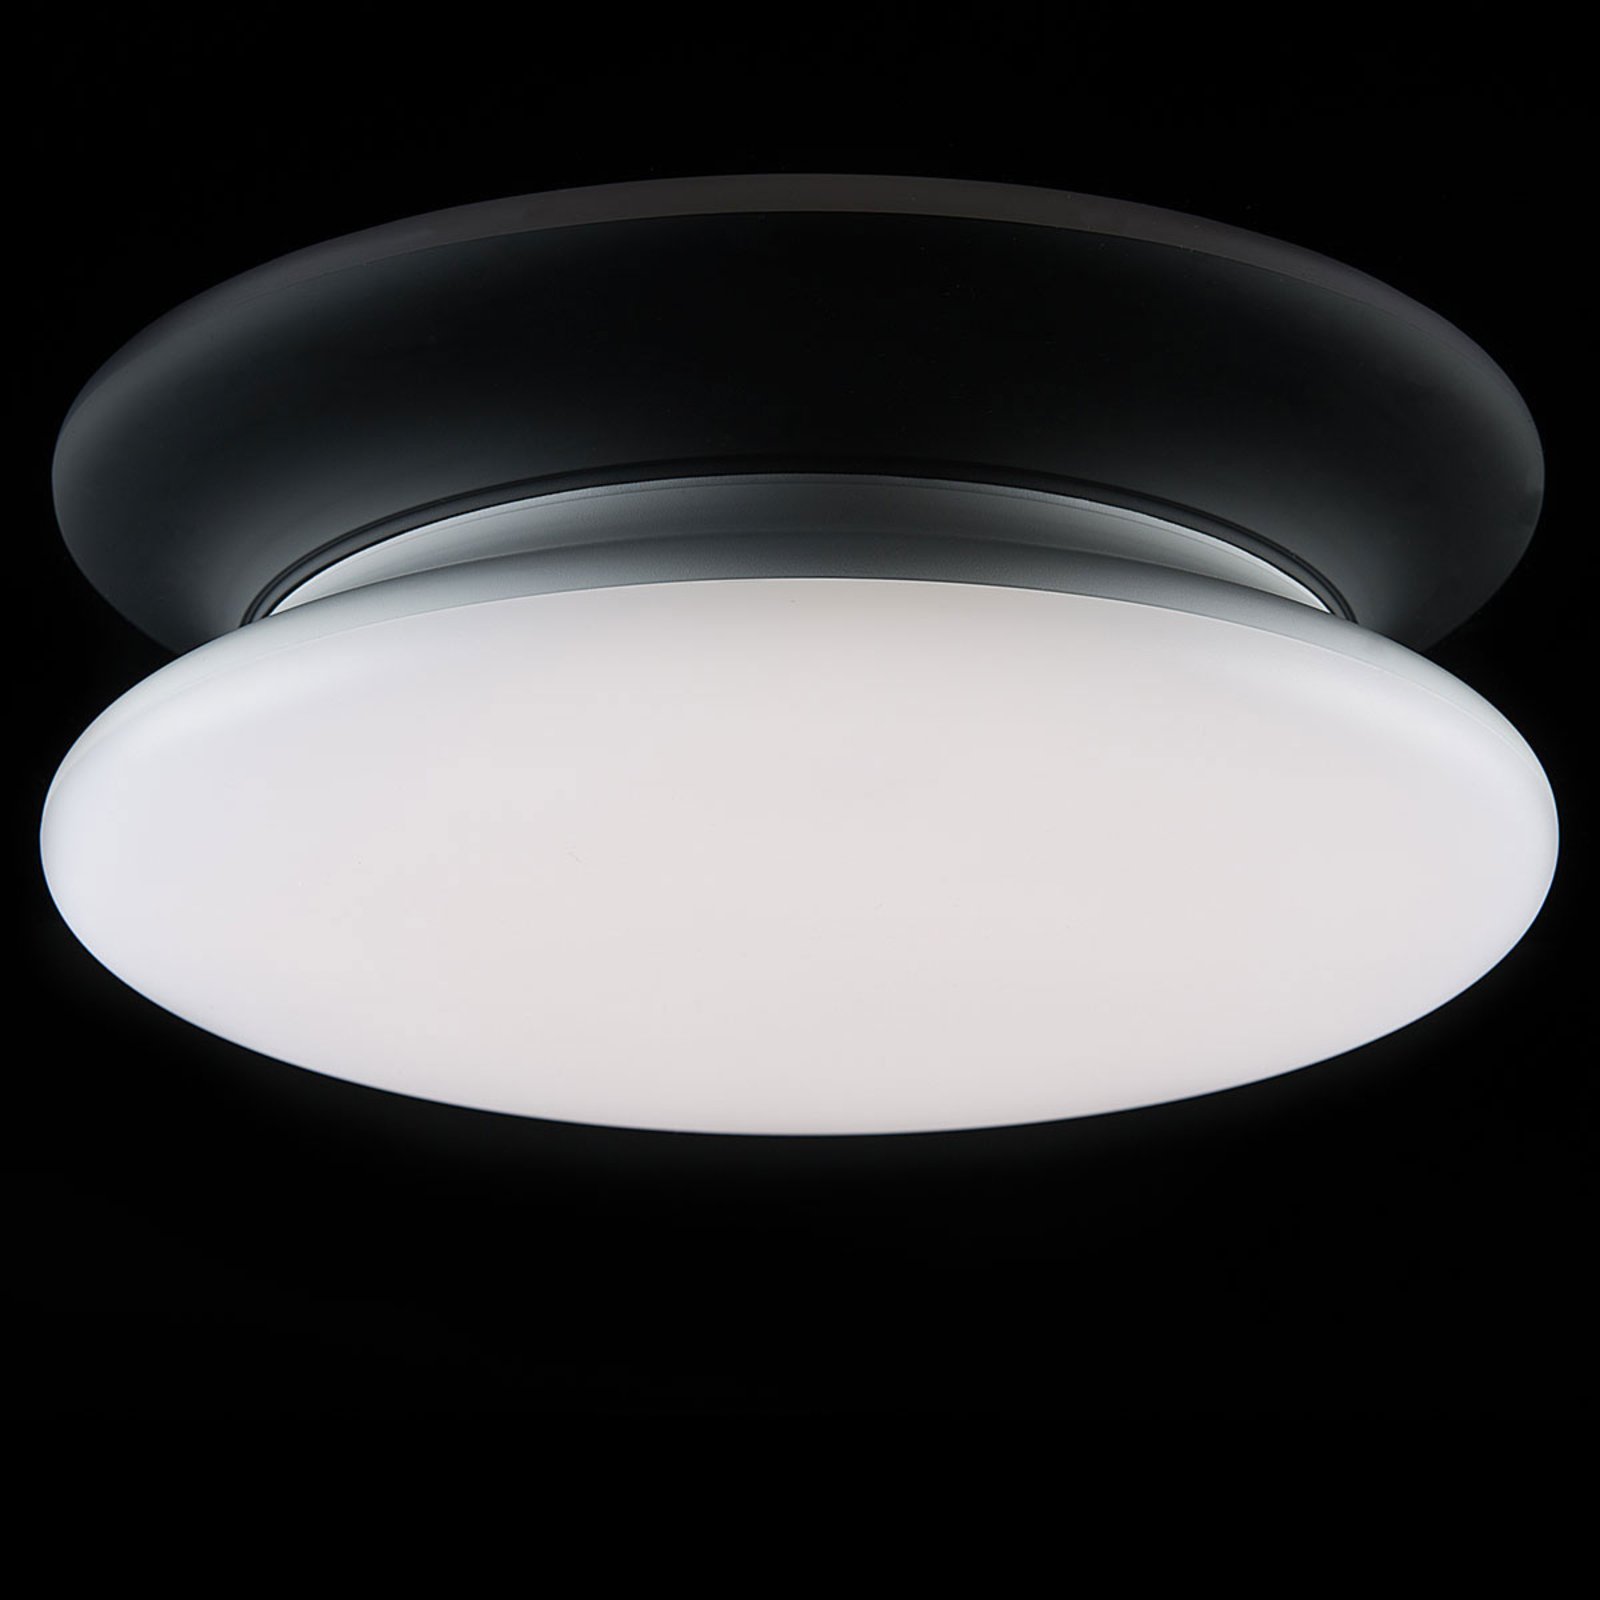 SLC LED ceiling light dimmable IP54 Ø 40cm 4,000K